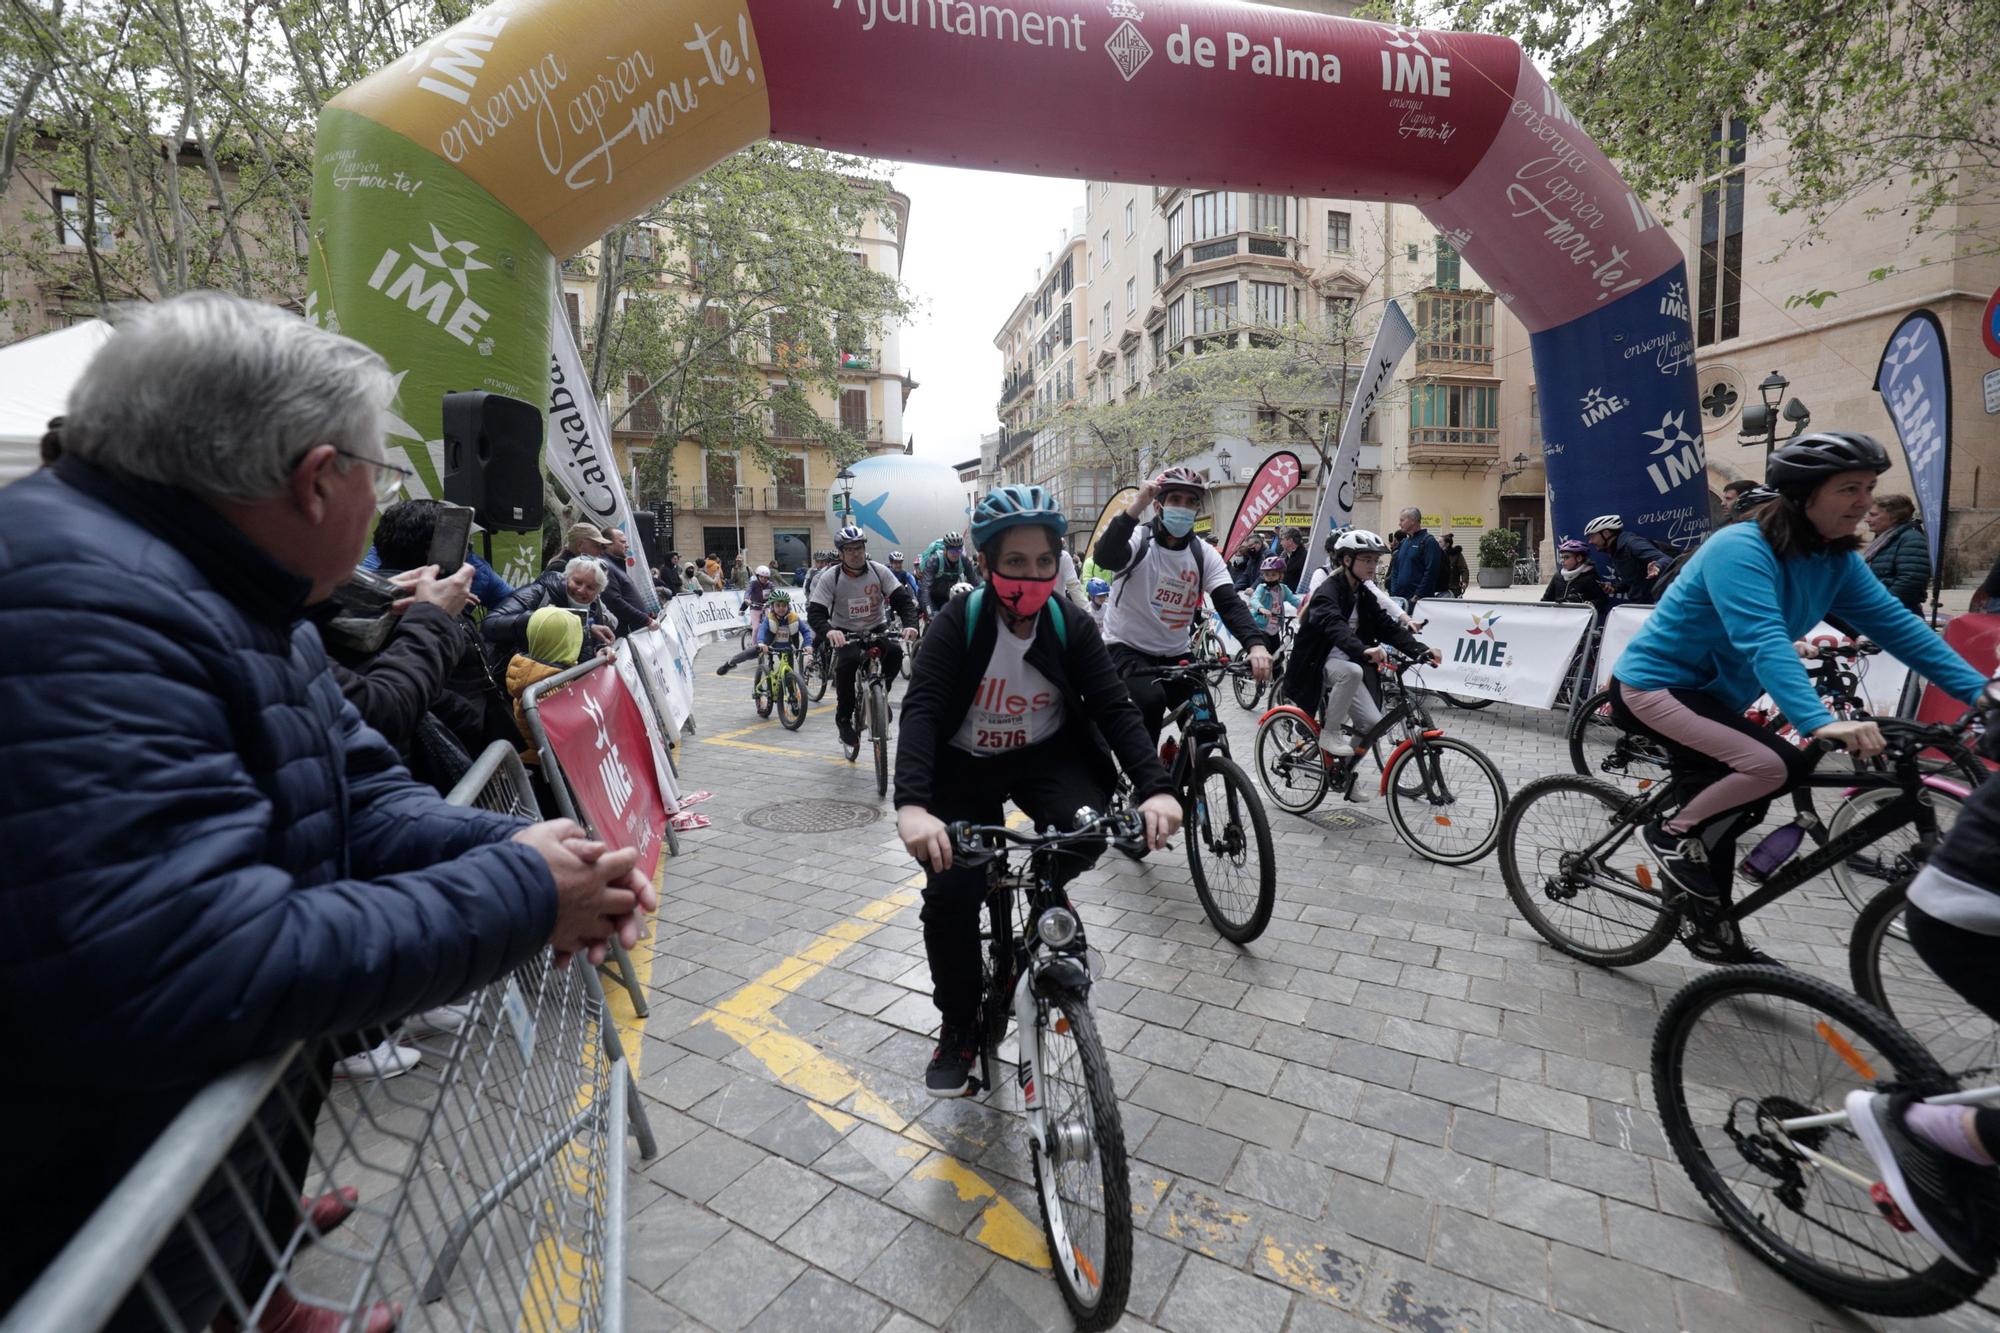 Casi 3.000 personas en el regreso de la Diada Ciclista de Sant Sebastià en Palma